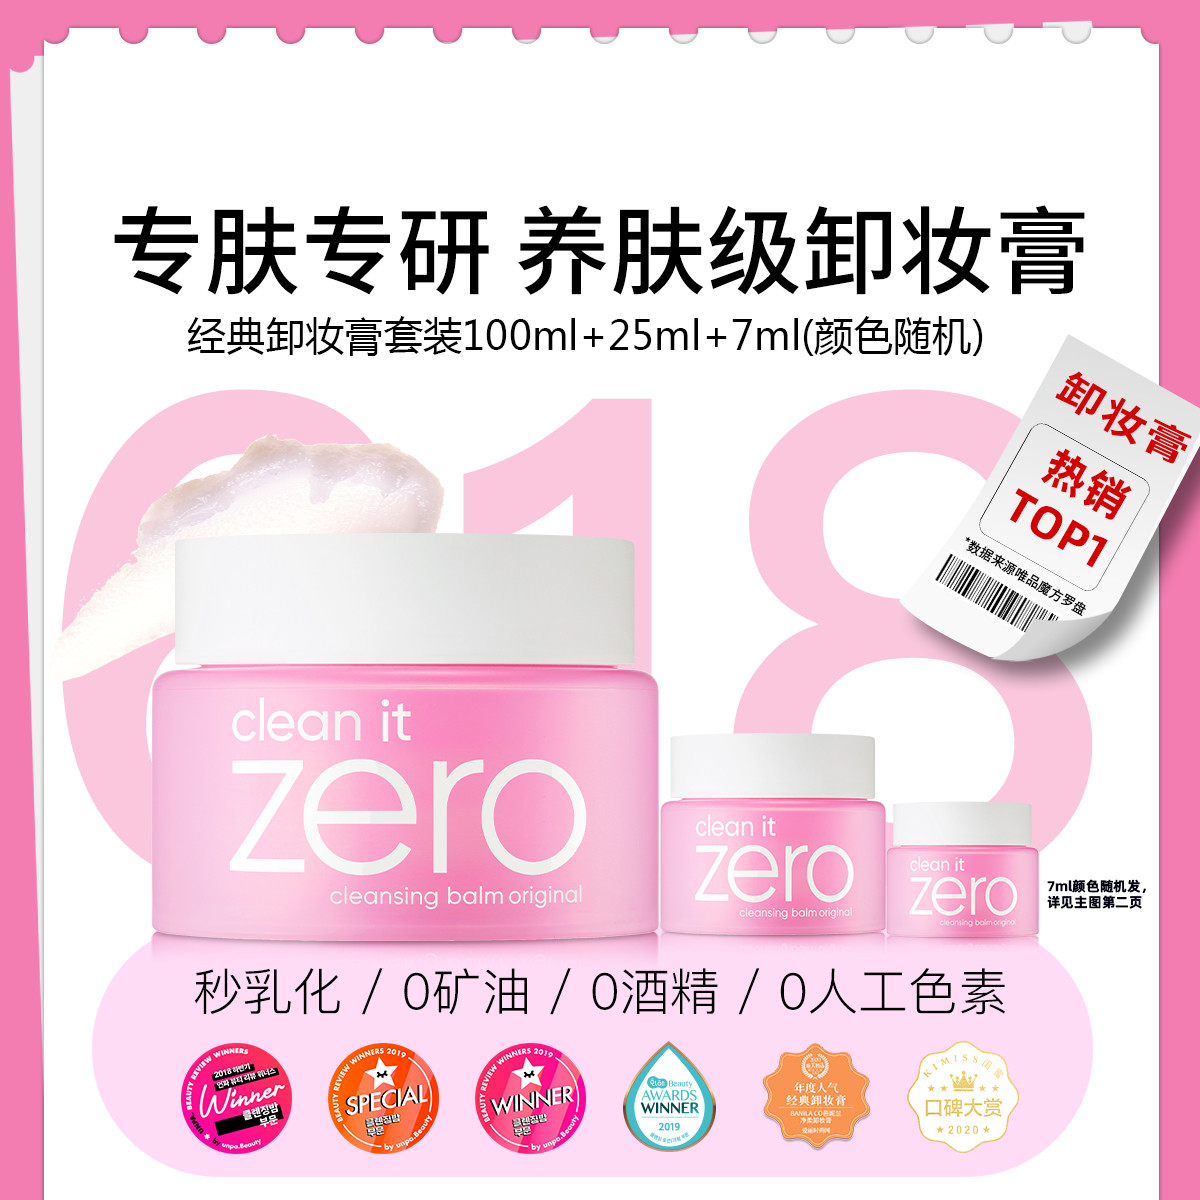 【超值爆款】ZERO132ml超值套装卸妆膏 卸妆乳清洁温和